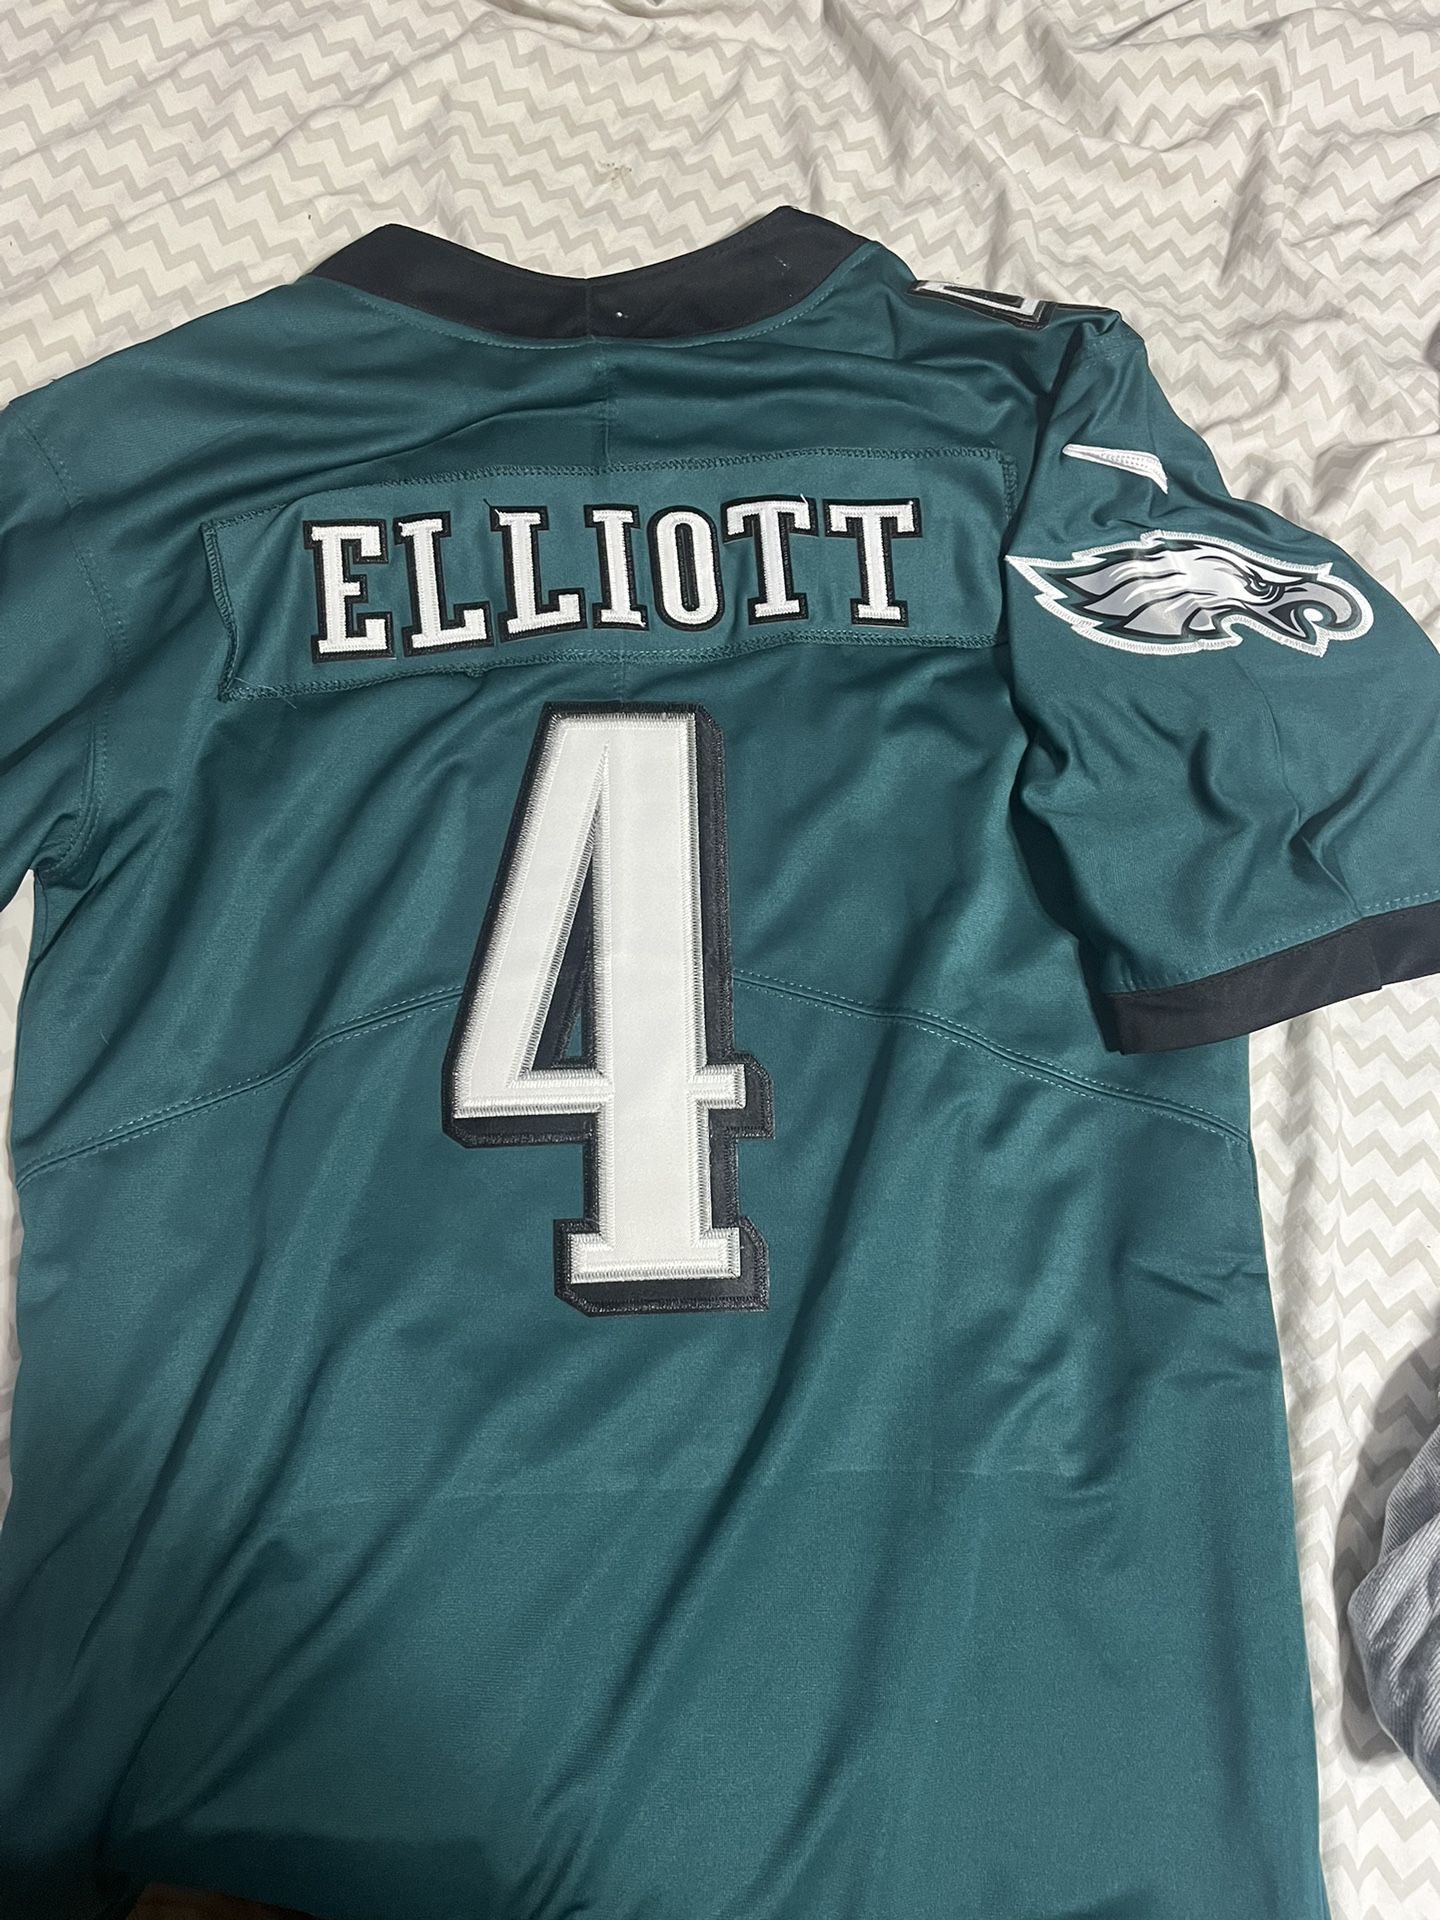 Stitched Philadelphi Eagles Jersey Jake Elliot Super Bowl Hurts 